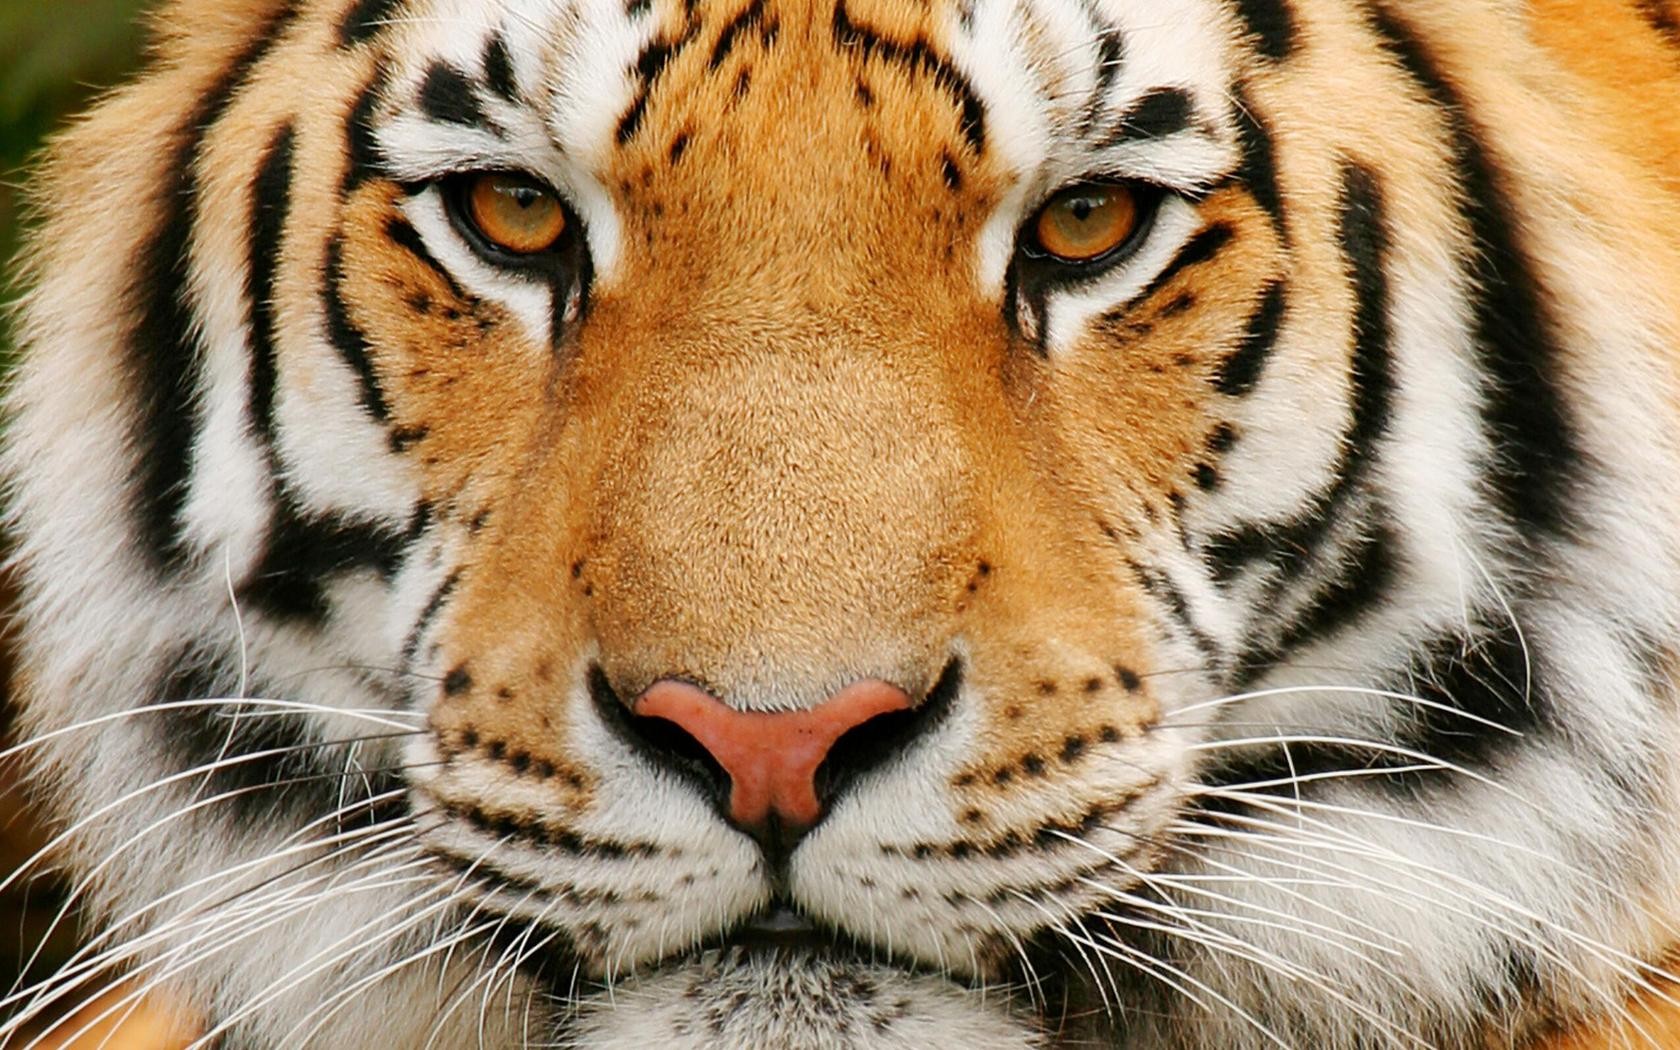 pet animals wallpaper,tiger,mammal,wildlife,terrestrial animal,vertebrate